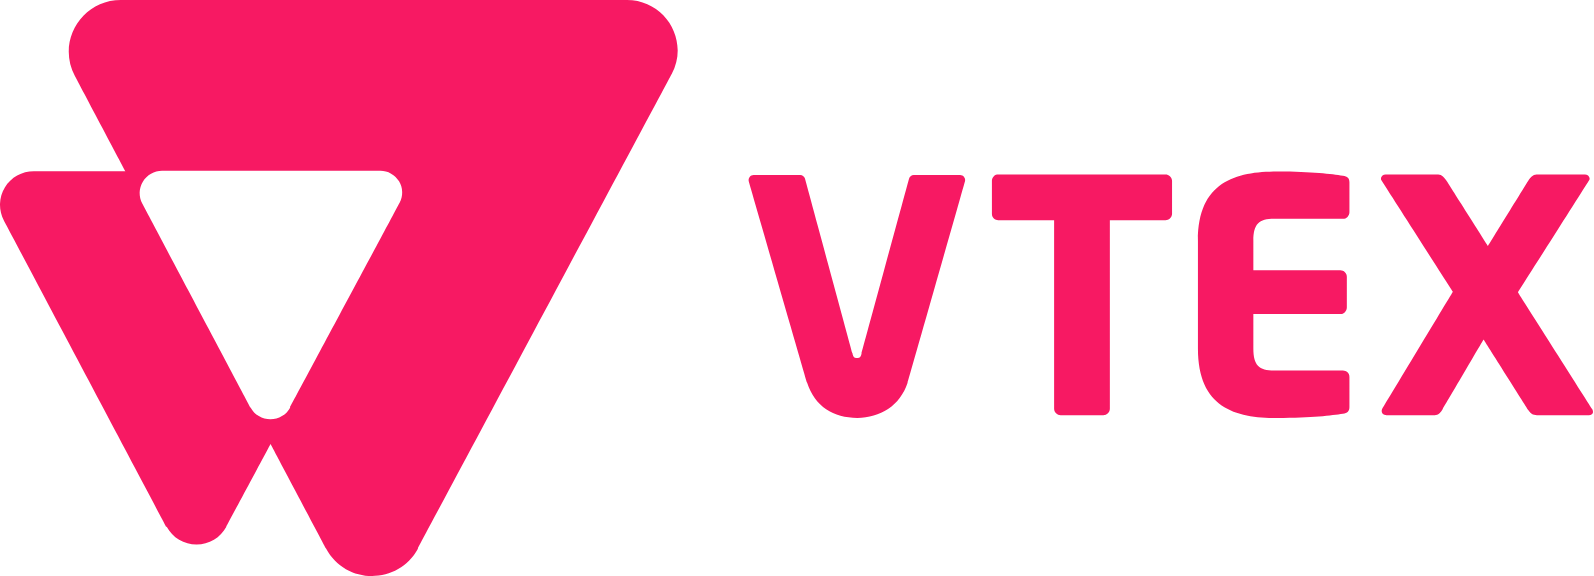 VTEX logo large (transparent PNG)